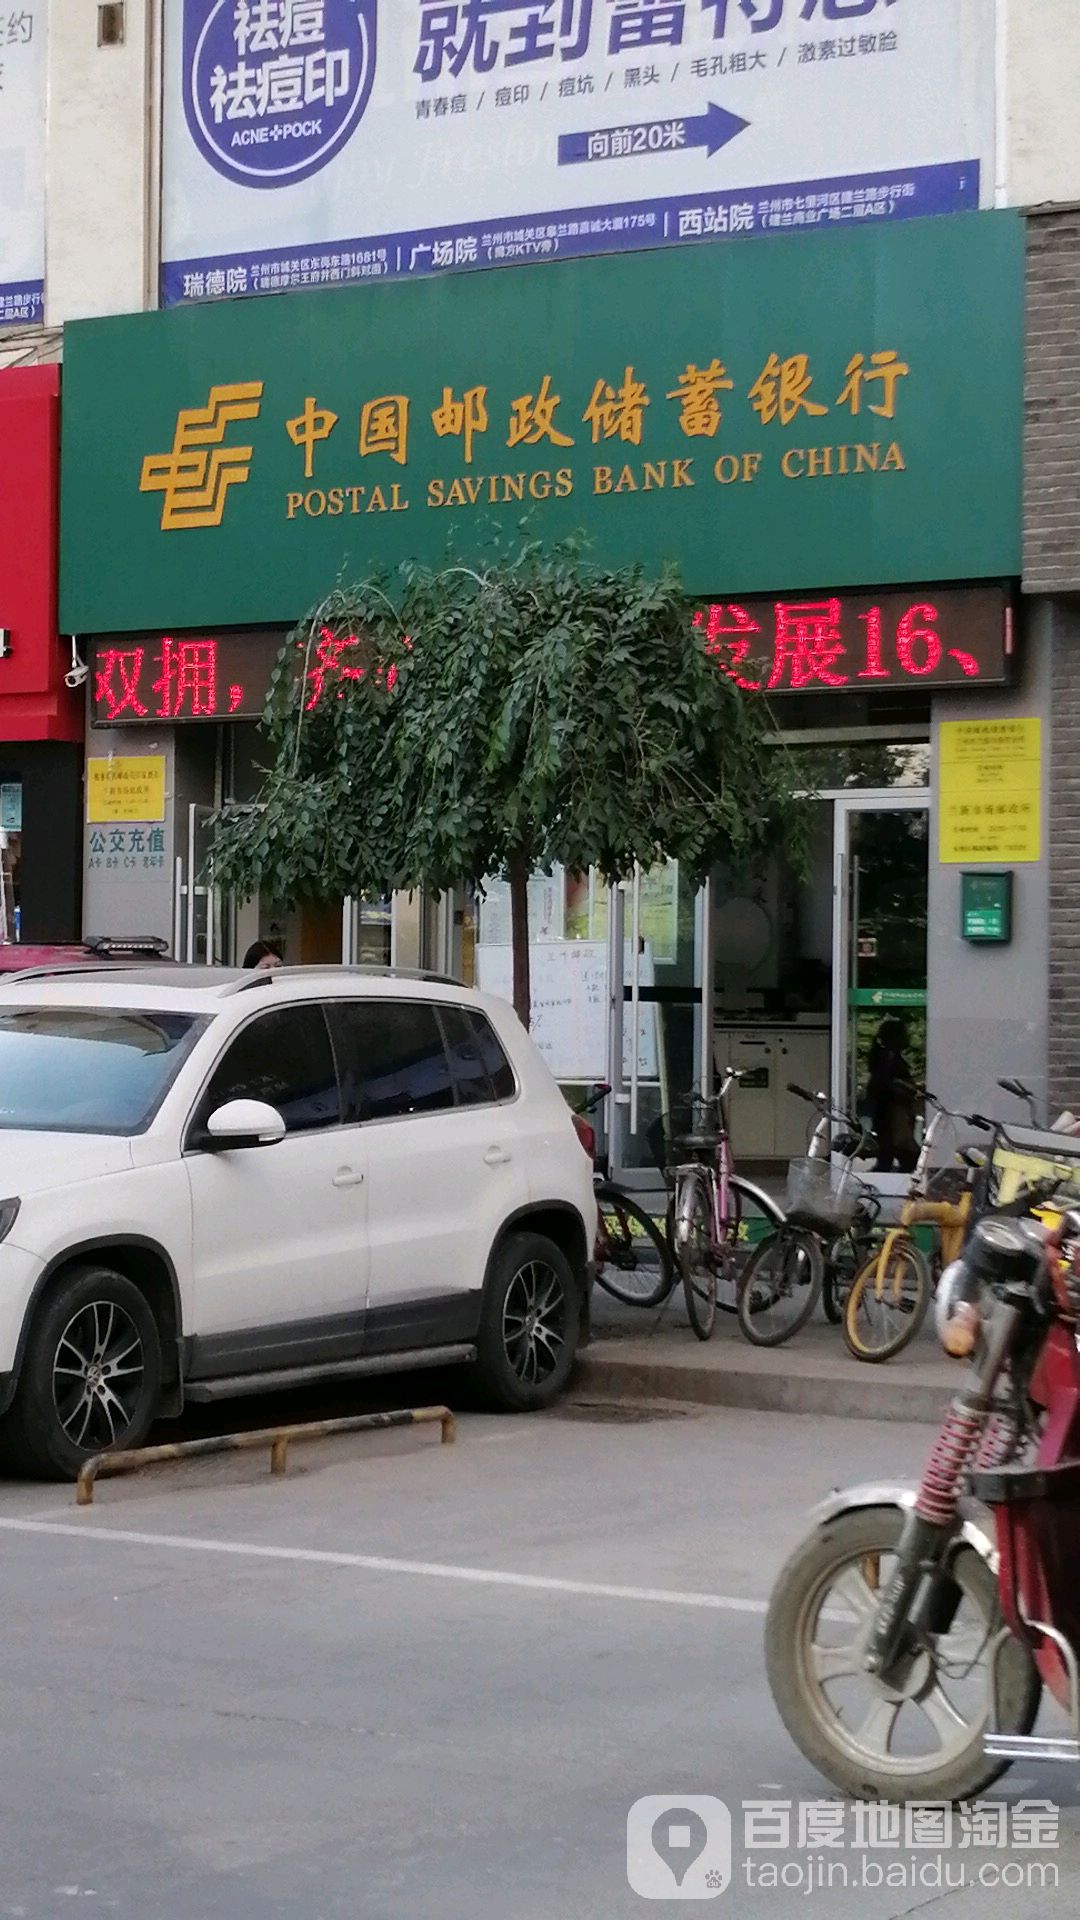 中国邮政储蓄银行24小时自助银行(兰州市兰新市场支行)